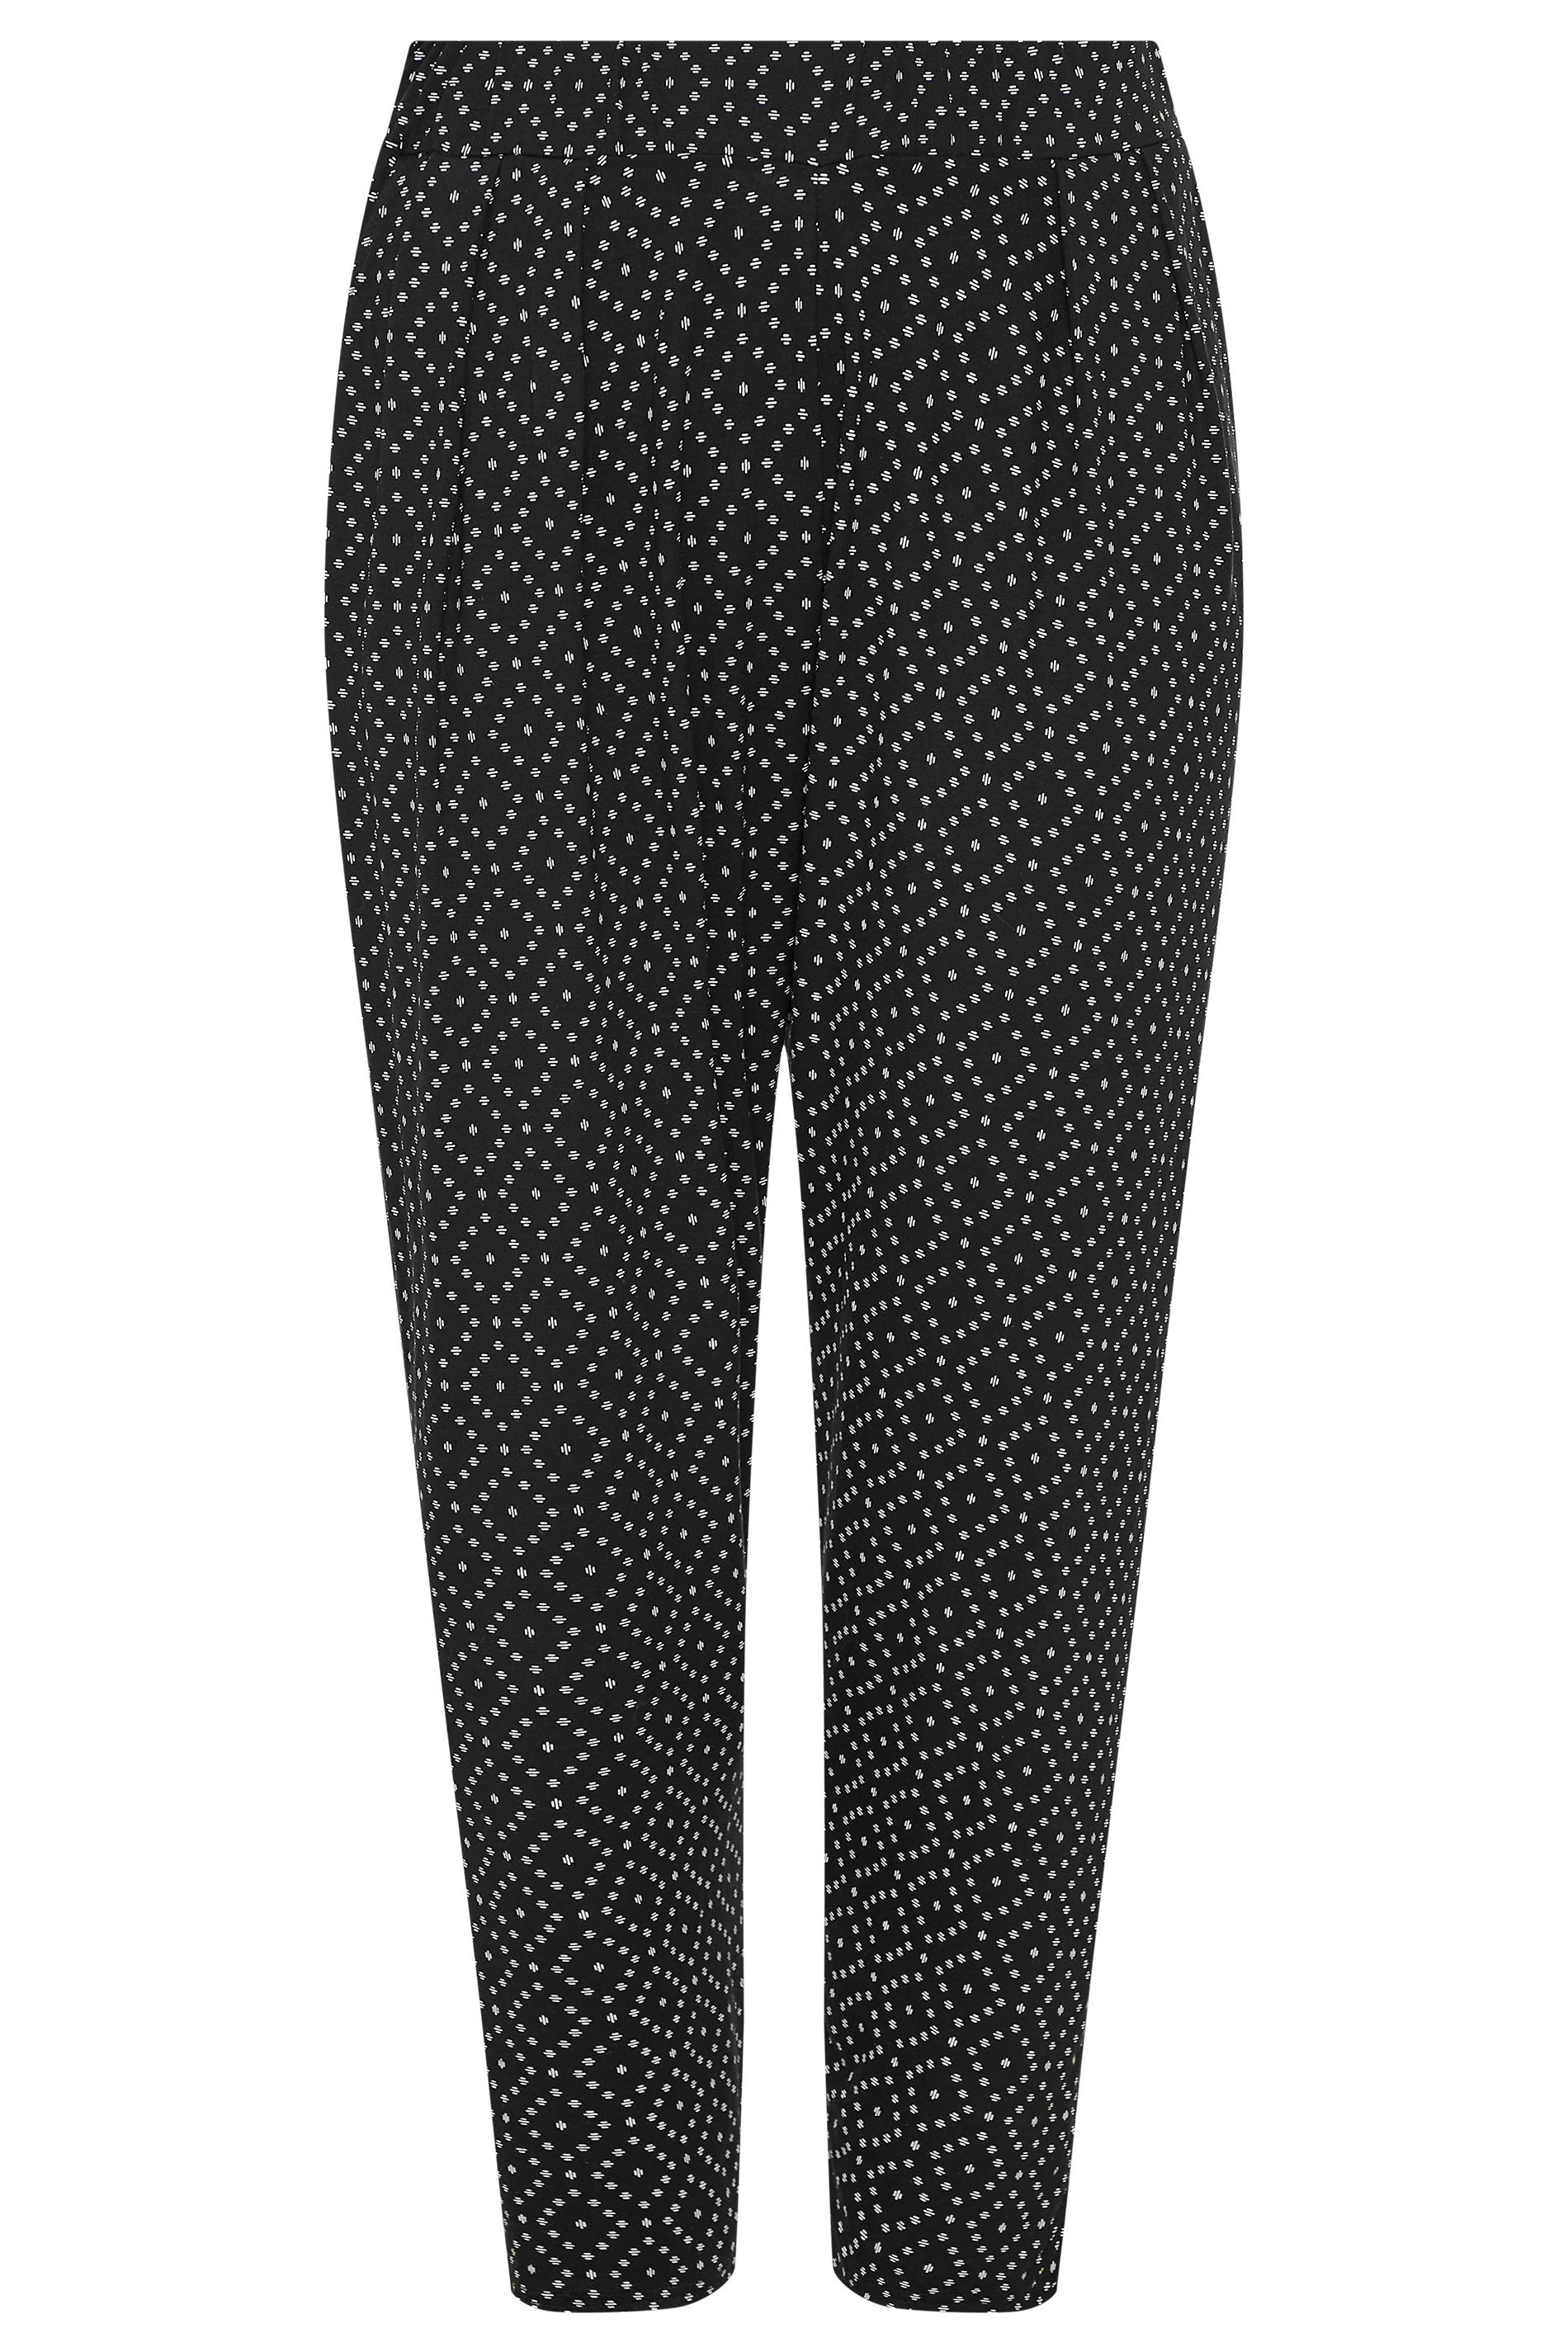 Grande taille  Pantalons Grande taille  Pantalons Fluides Sarouel | Pantalon Noir Léger Imprimé Diamants - RJ46214